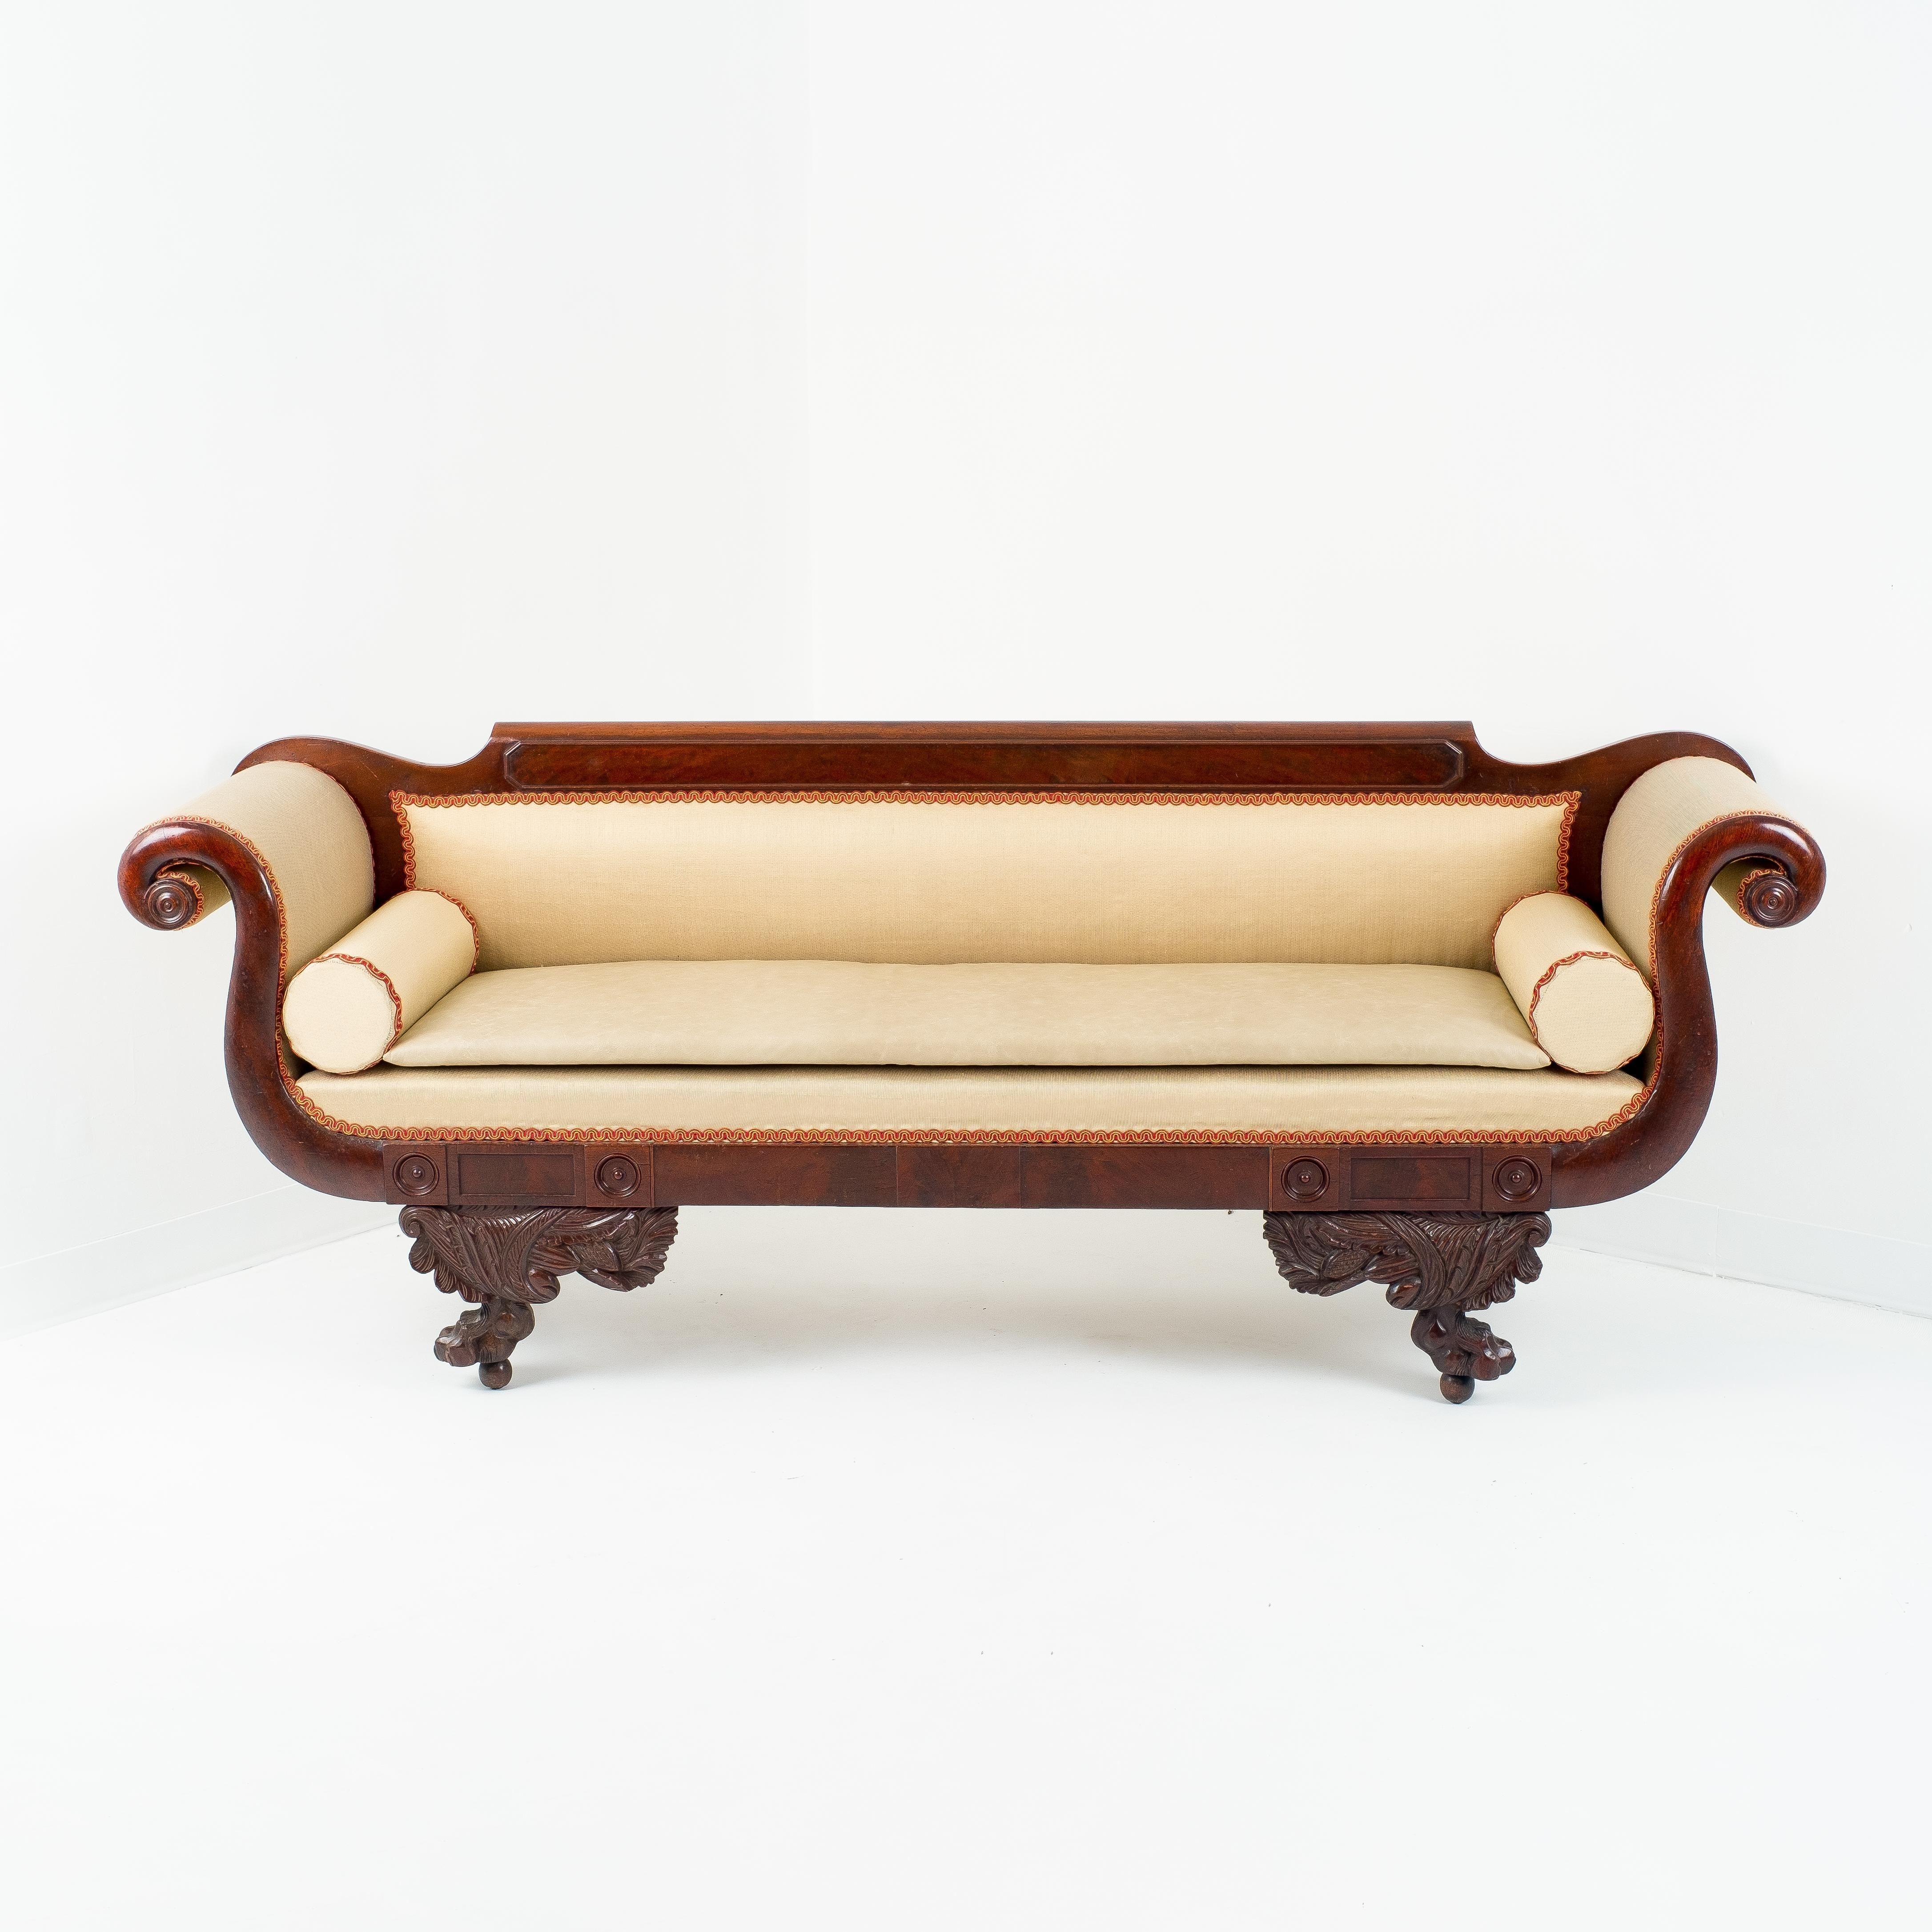 Amerikanisches Sofa im neoklassischen Stil mit Mahagoni-Rahmen, gepolstert mit Seide und kontrastierender Gimpe. Die Kammleiste ist mit einem Paneel aus Asthölzern aus Mahagoni versehen, das sich über die gesamte Länge der Sofalehne erstreckt. Die